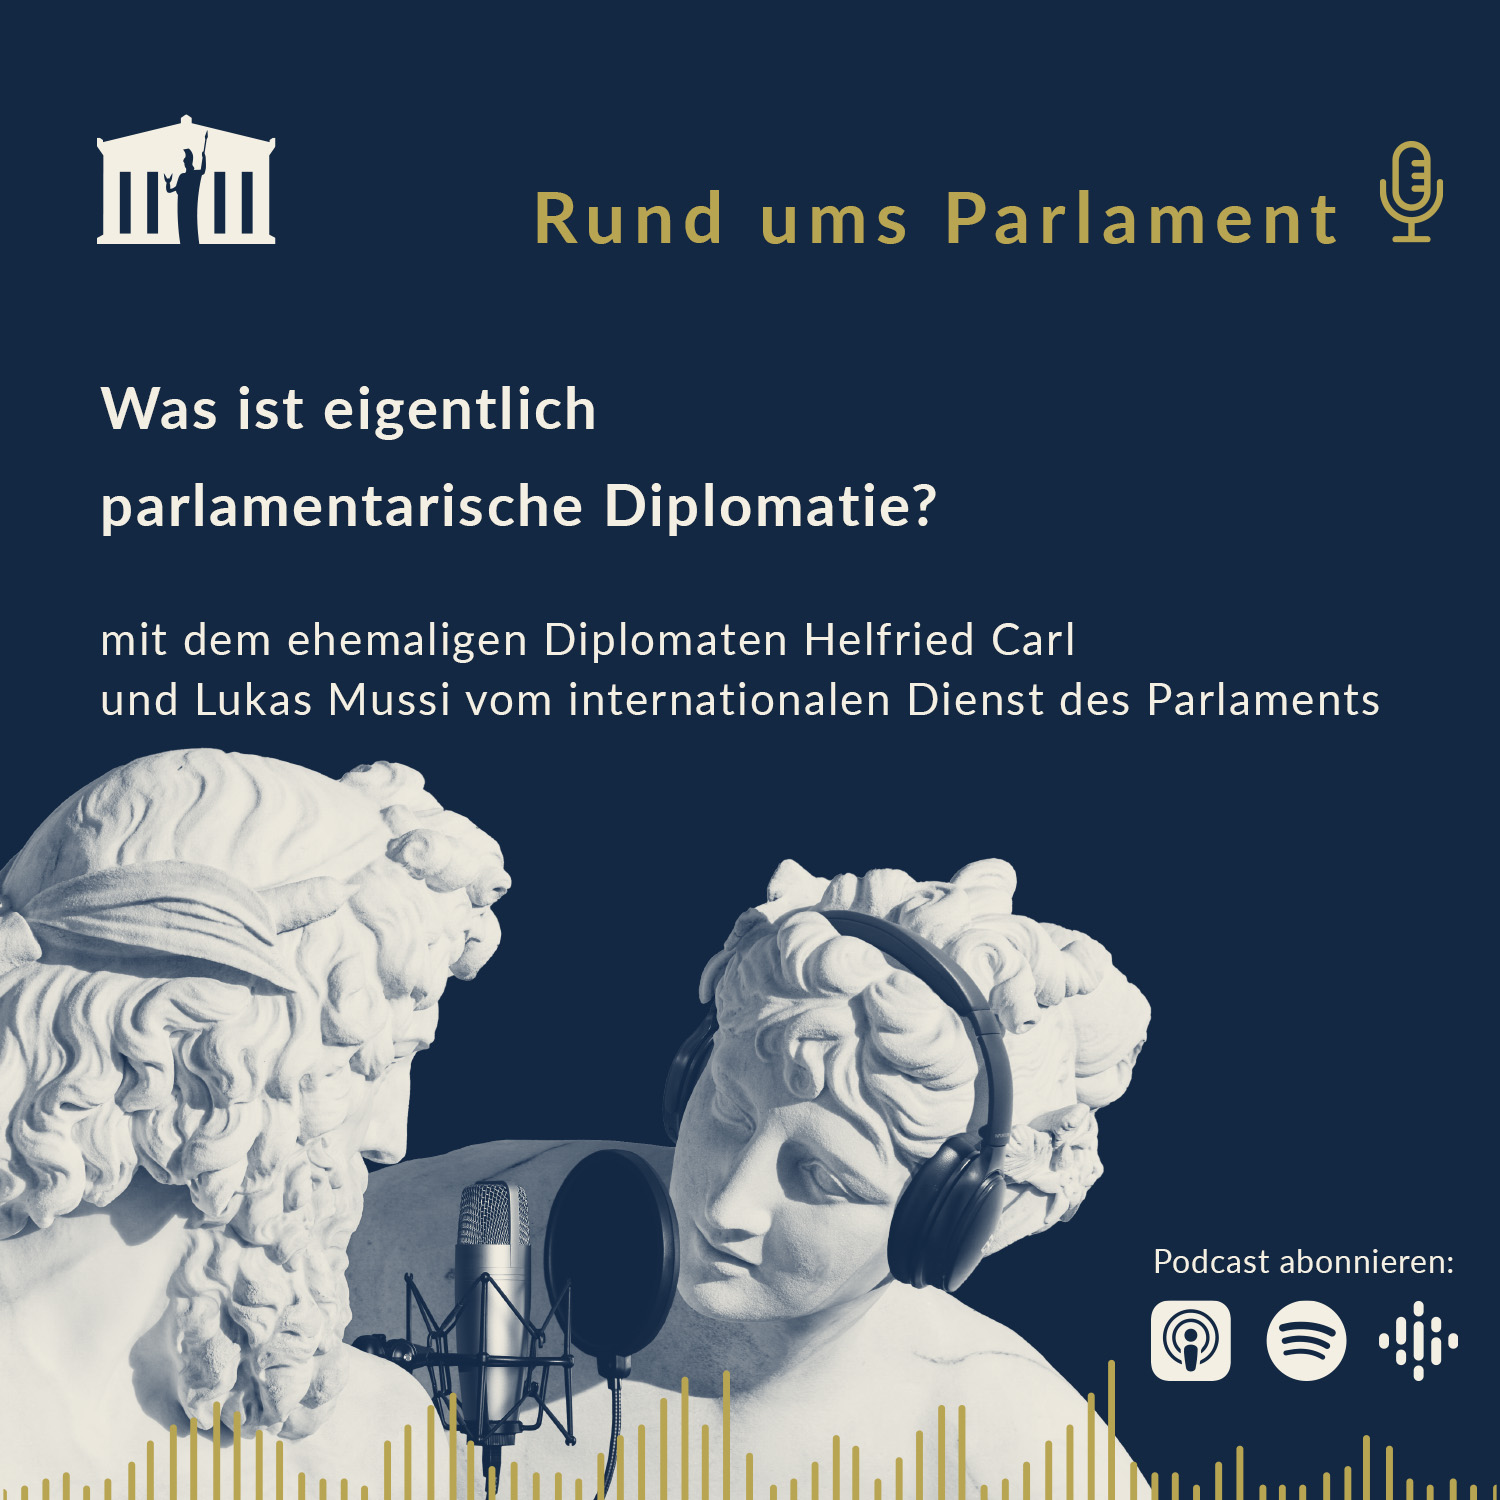 Was ist eigentlich parlamentarische Diplomatie?